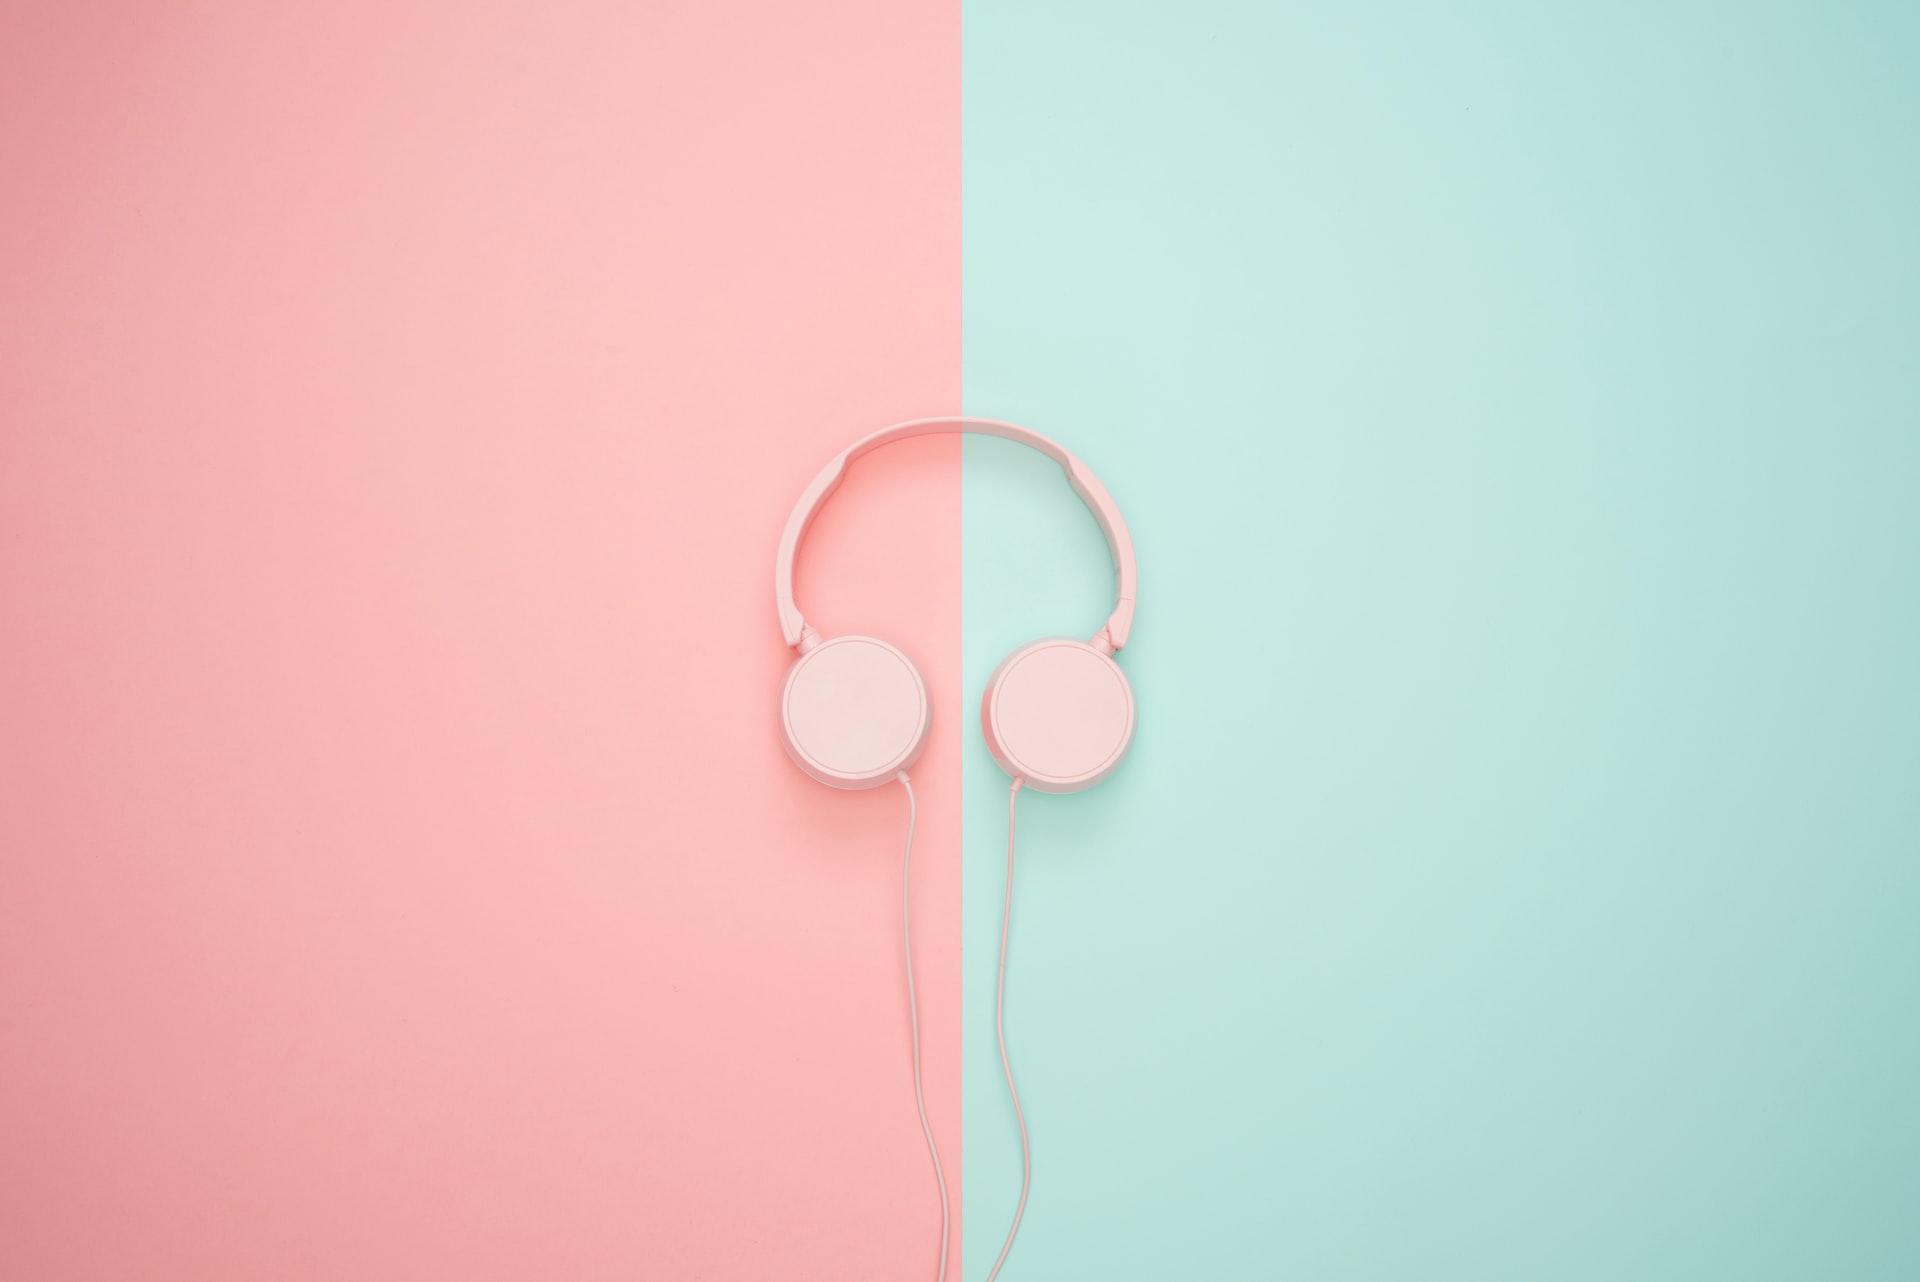 Kopfhörer vor rosa-günem Hintergund